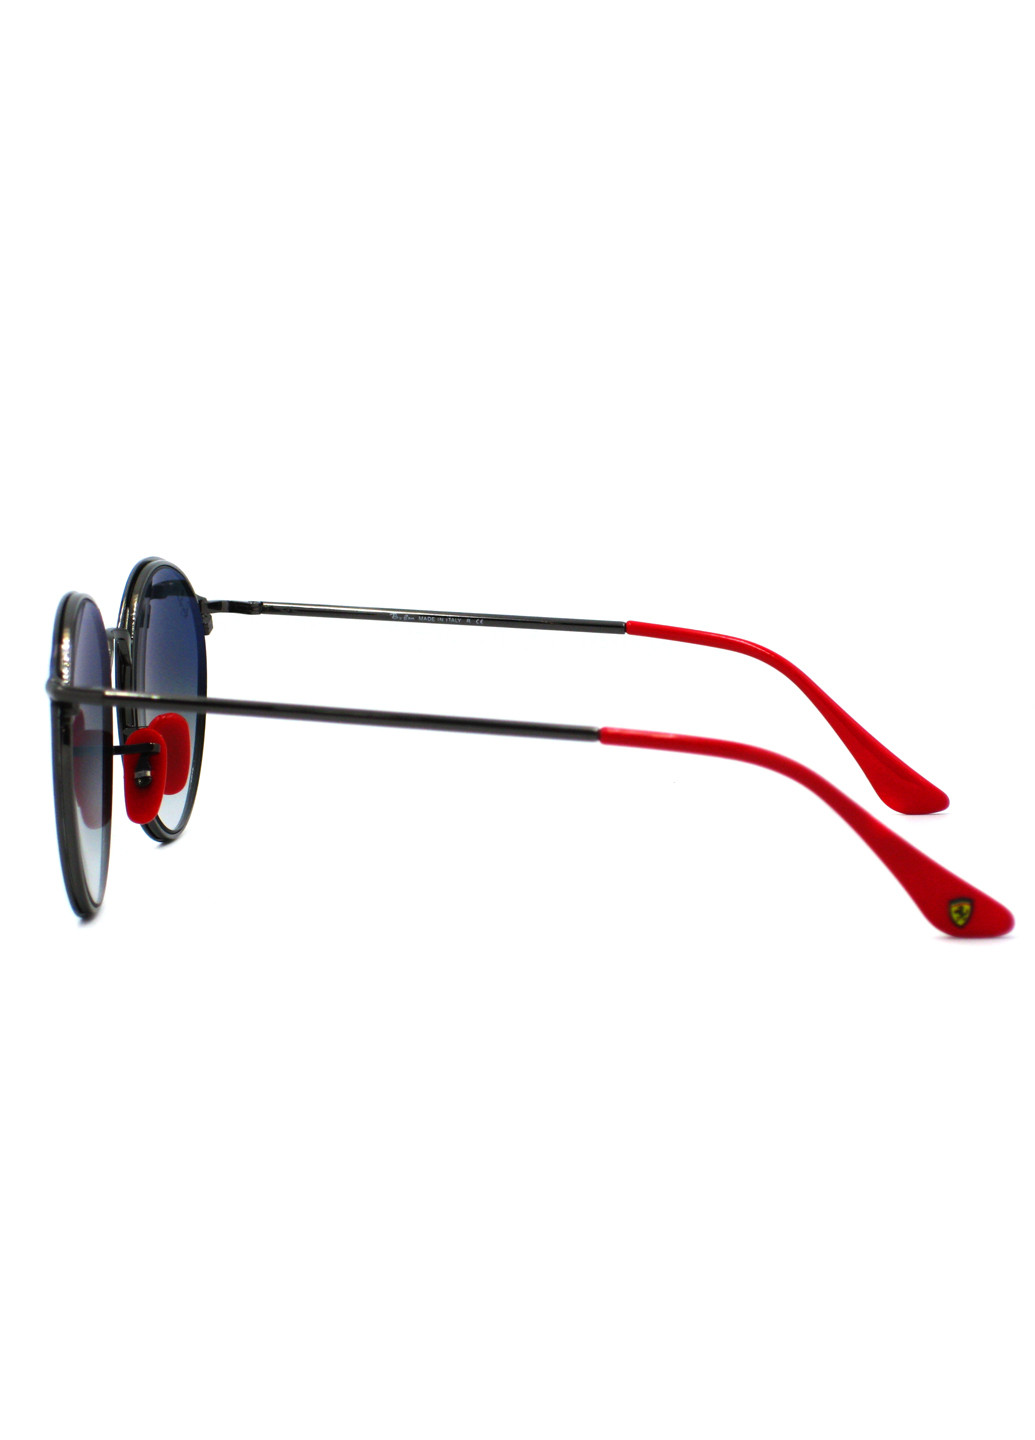 Cолнцезащитные очки Ray-Ban rb3602 m f0243f (199022657)